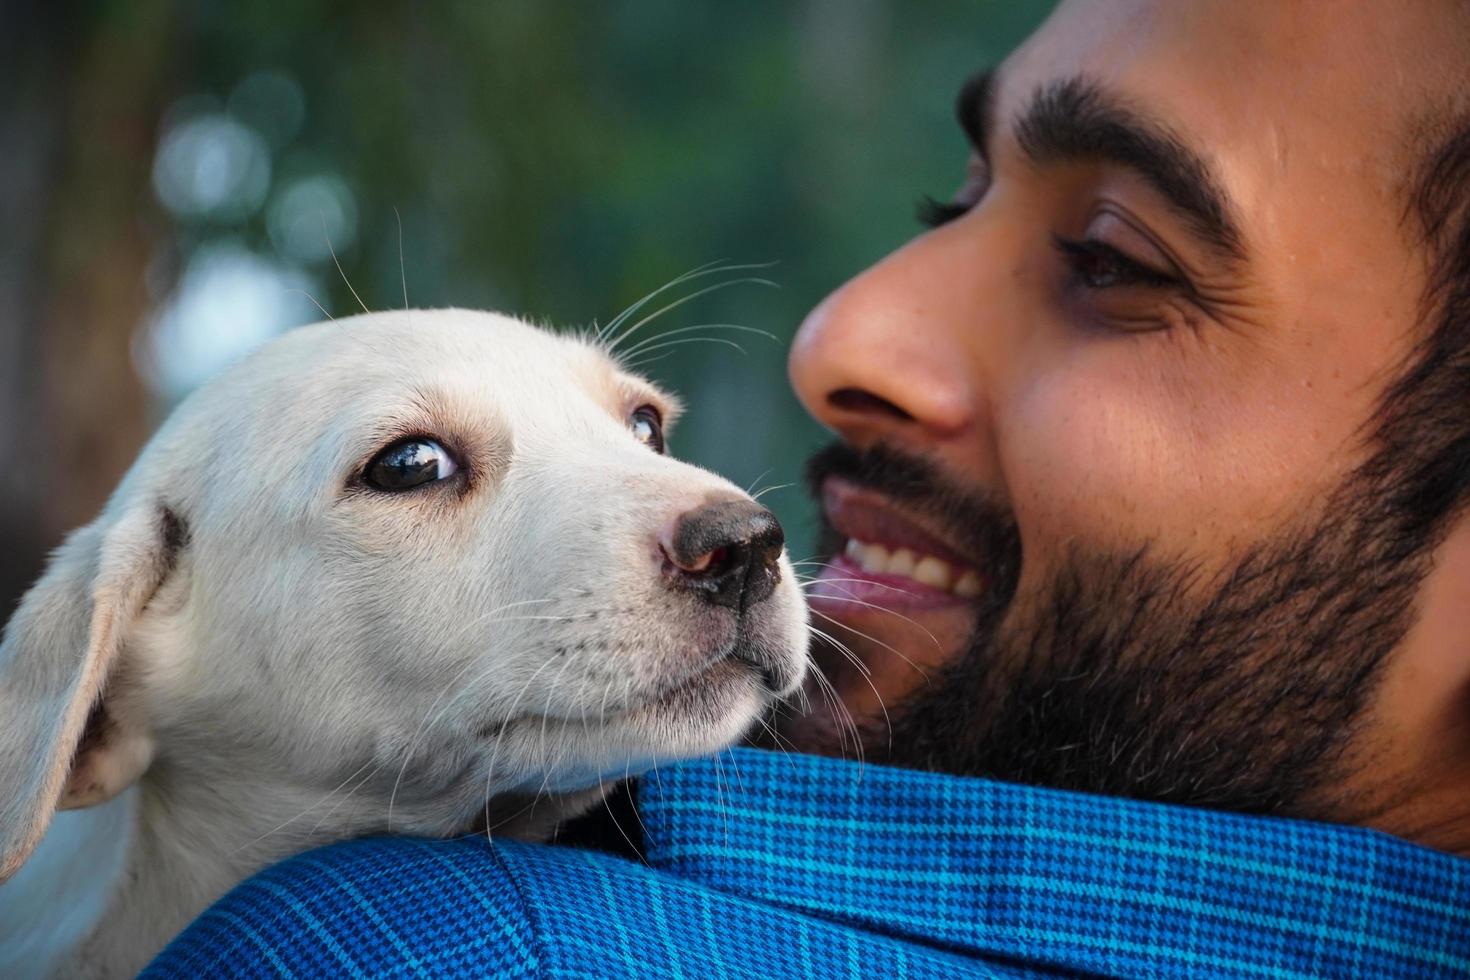 immagine dell'amante dei cani, immagine dell'uomo con un simpatico cane indiano di strada - immagini simpatiche del cane indiano della strada con l'uomo foto